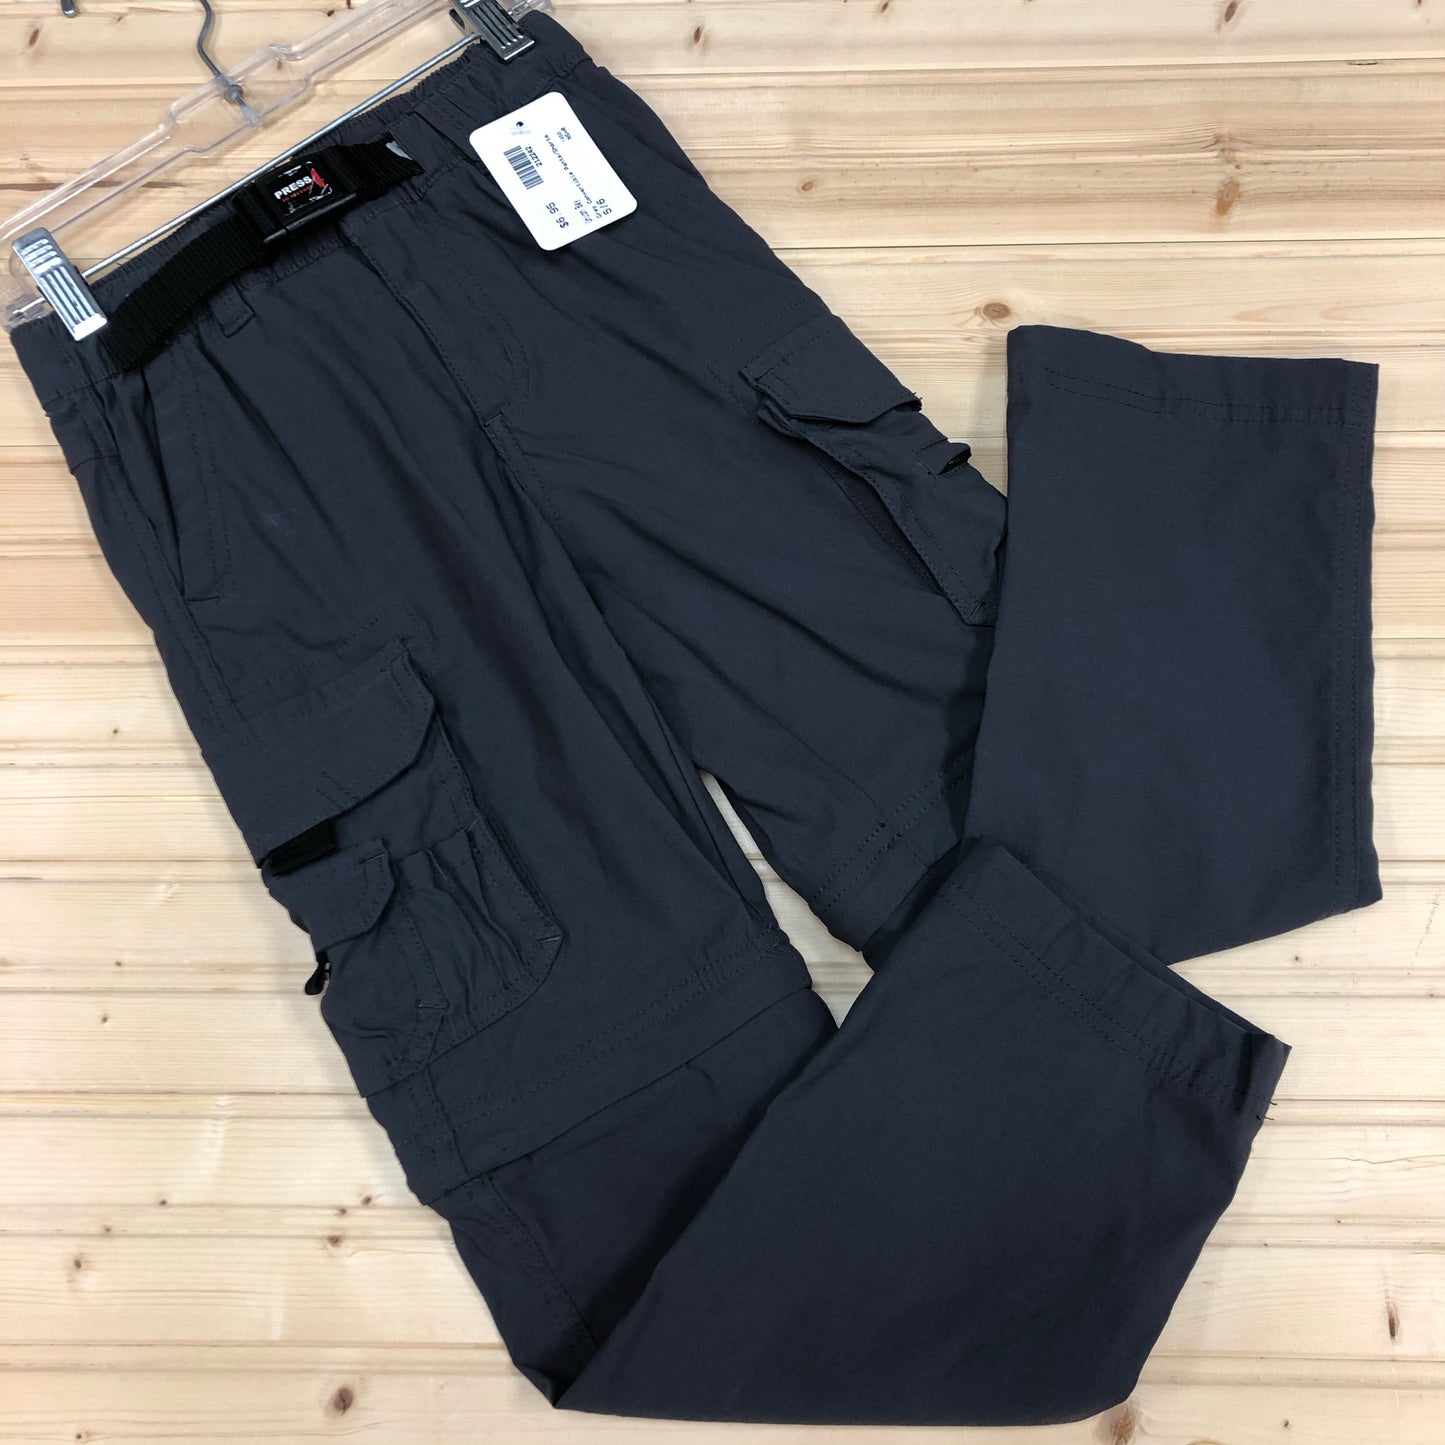 Grey Convertible Pants/Shorts